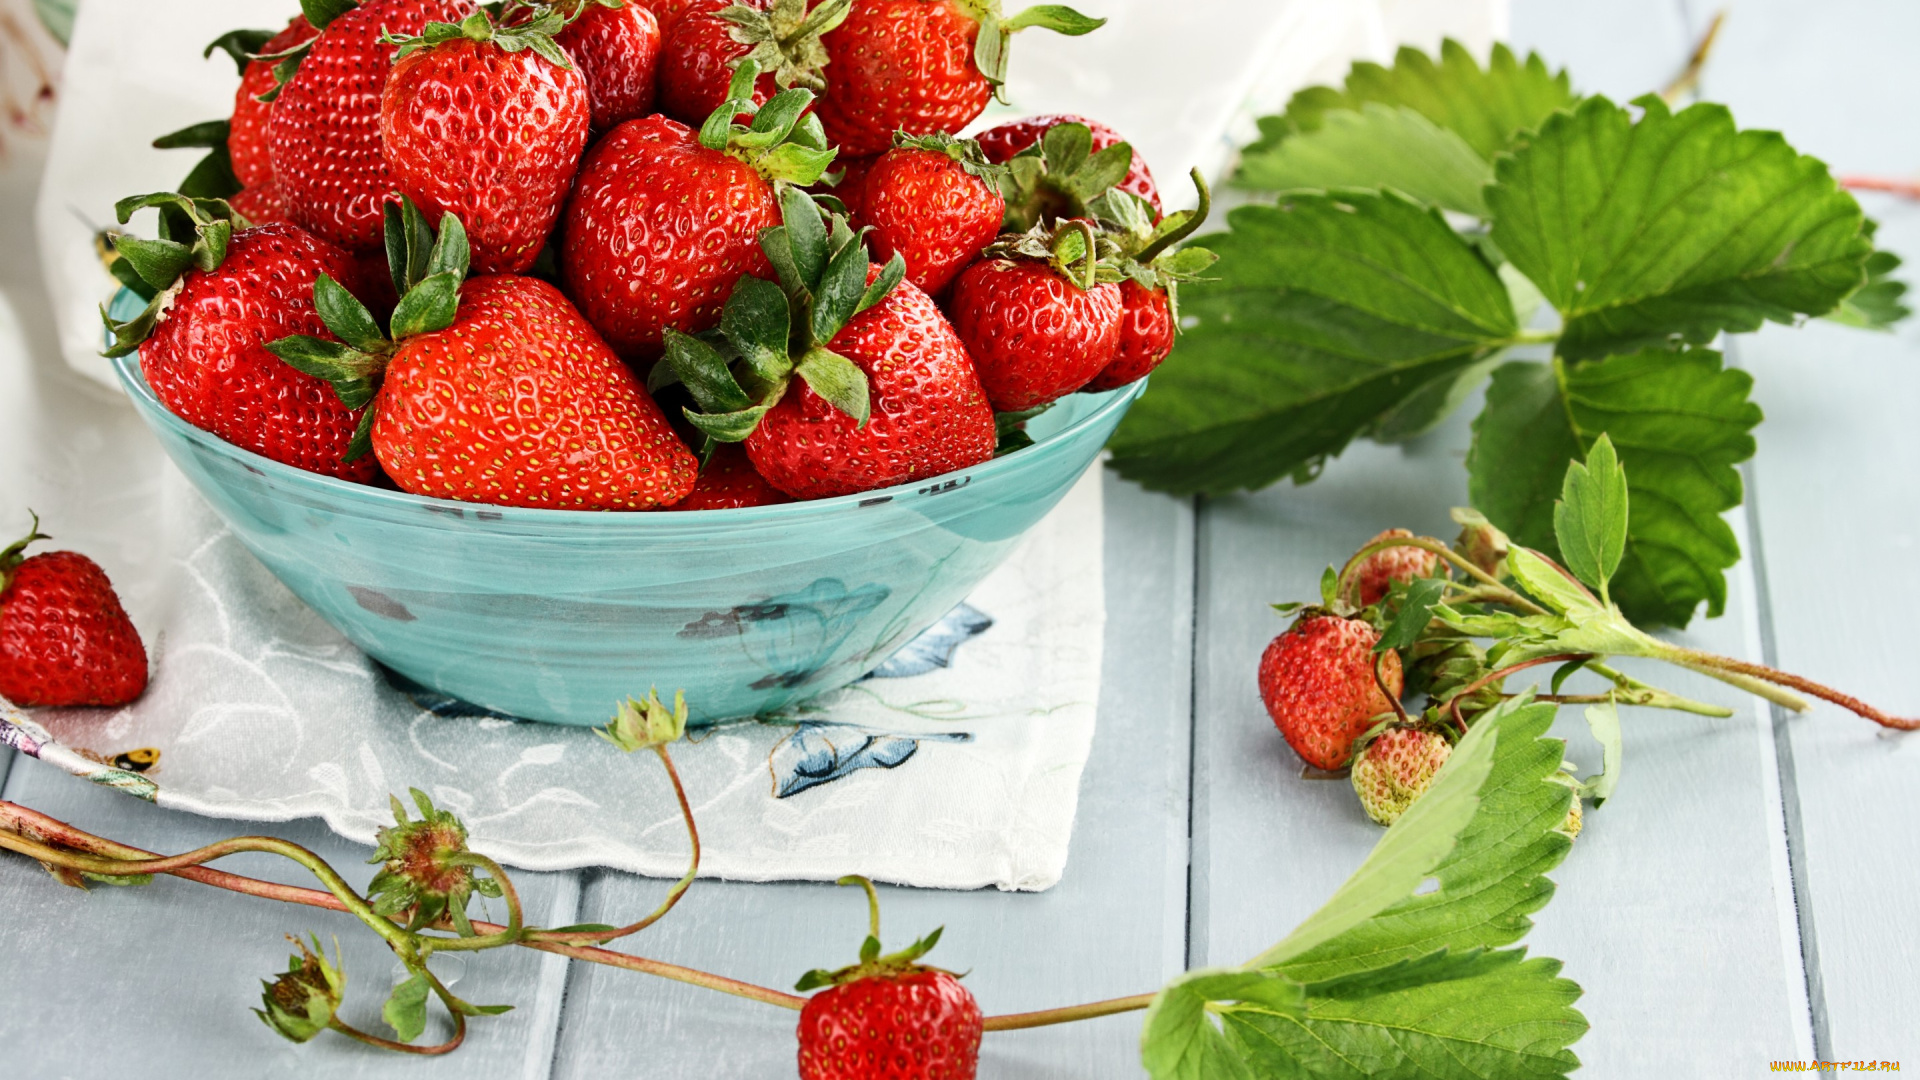 еда, клубника, , земляника, ягоды, спелая, миска, листья, красные, berries, fresh, strawberry